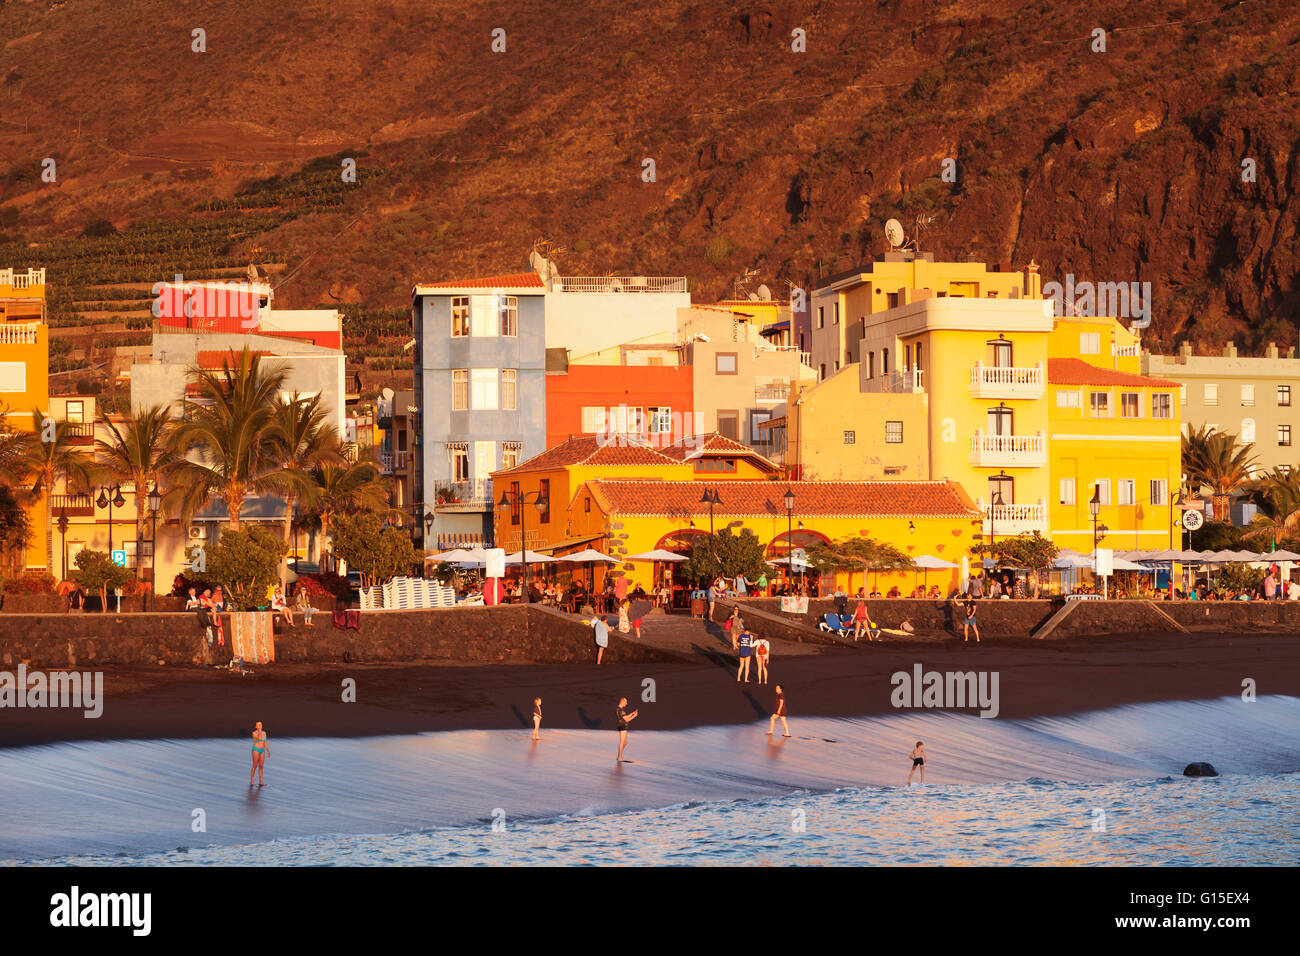 Playa del Puerto Beach, Puerto de Tazacorte, La Palma, Canary Islands, Spain, Europe Stock Photo